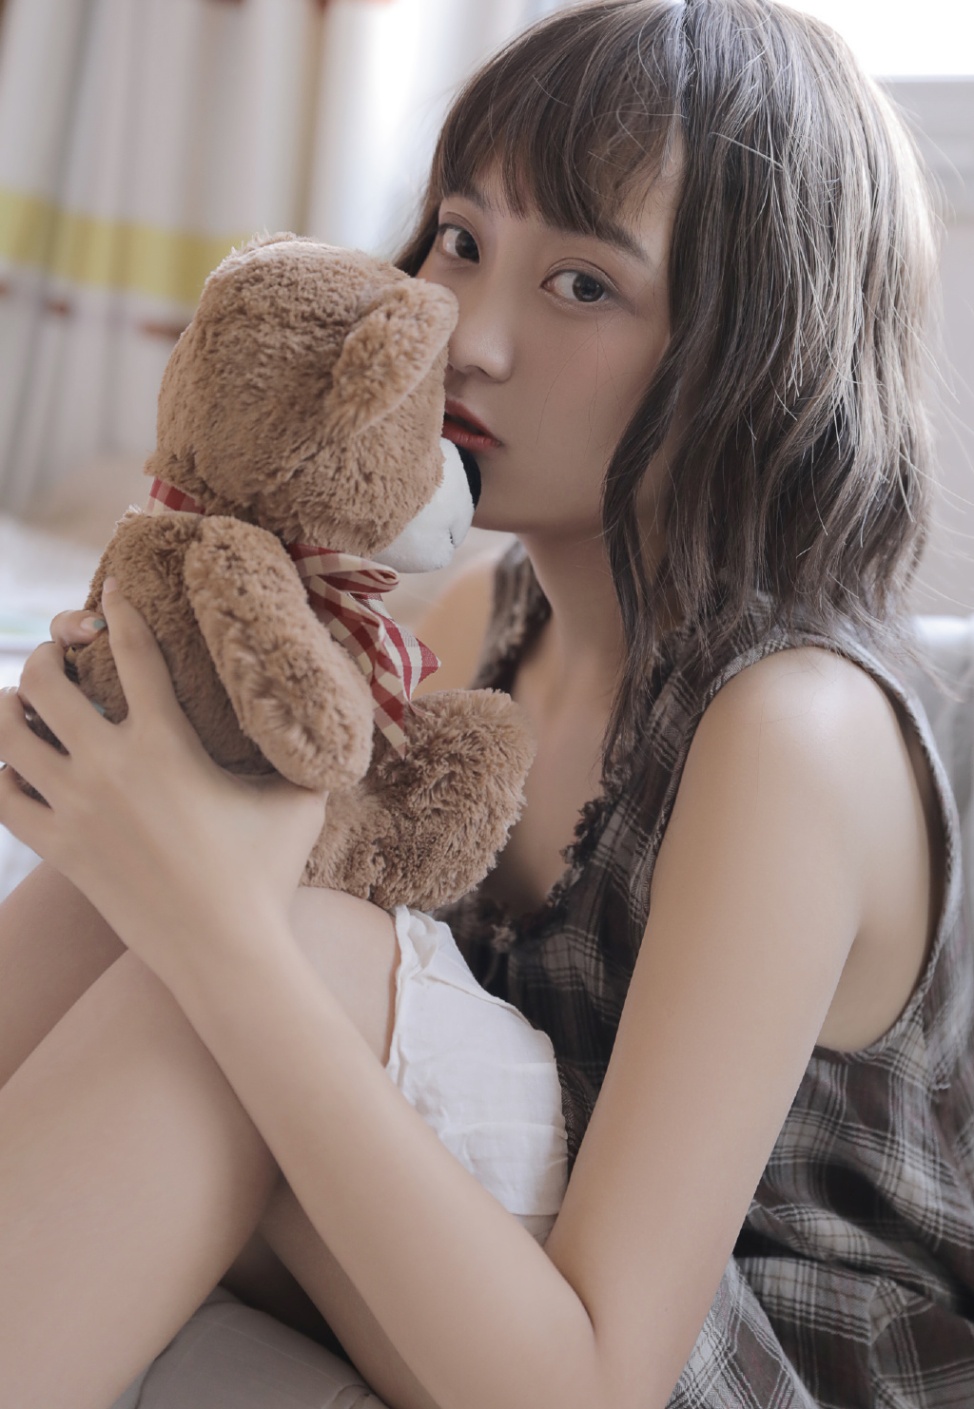 日本可爱美少女与小熊合影图片(第8页)